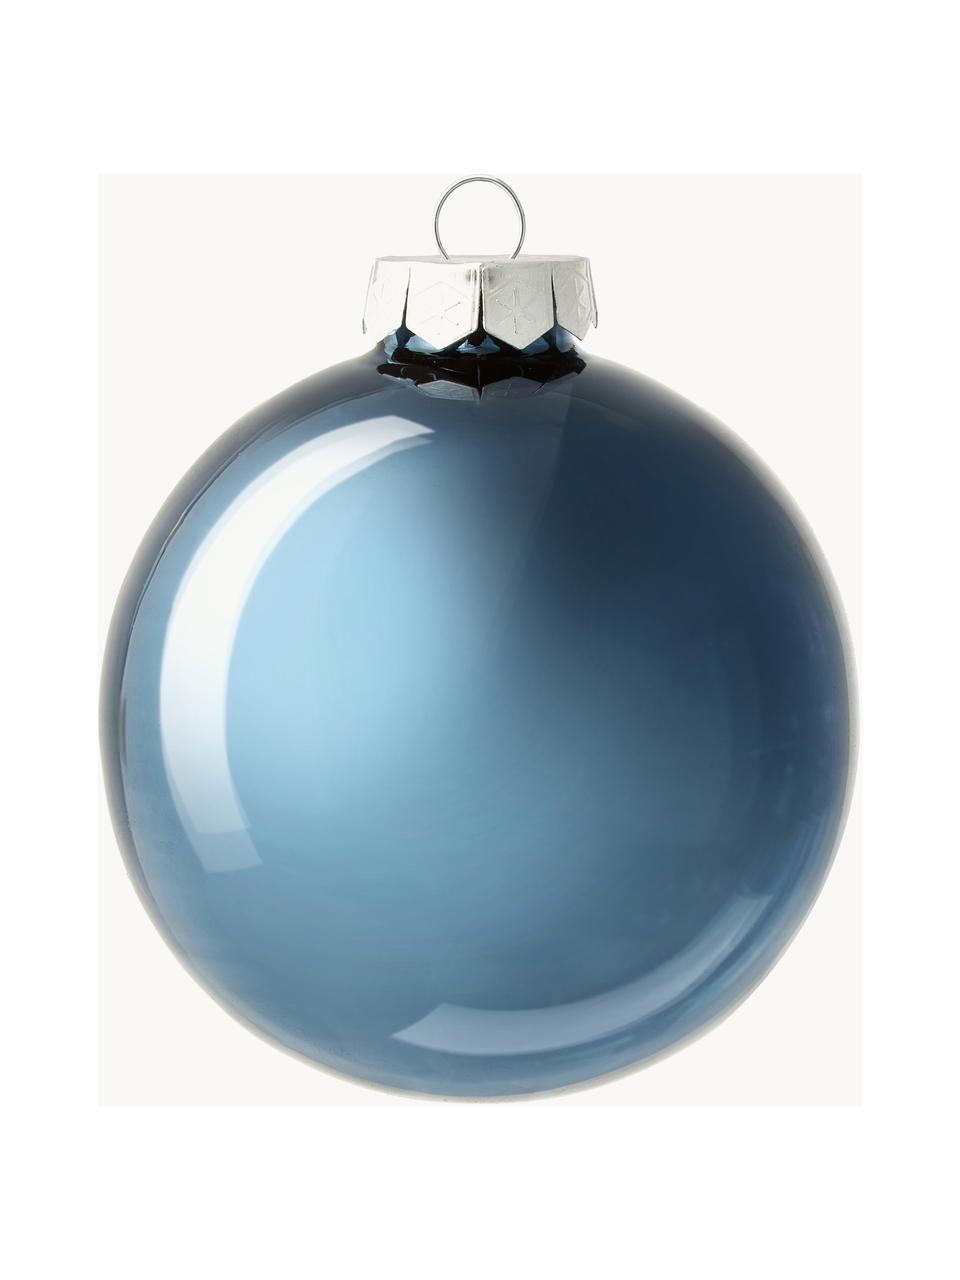 Sada vánočních ozdob lesklých/matných Evergreen, různé velikosti, Modrá, Ø 8 cm, 6 ks